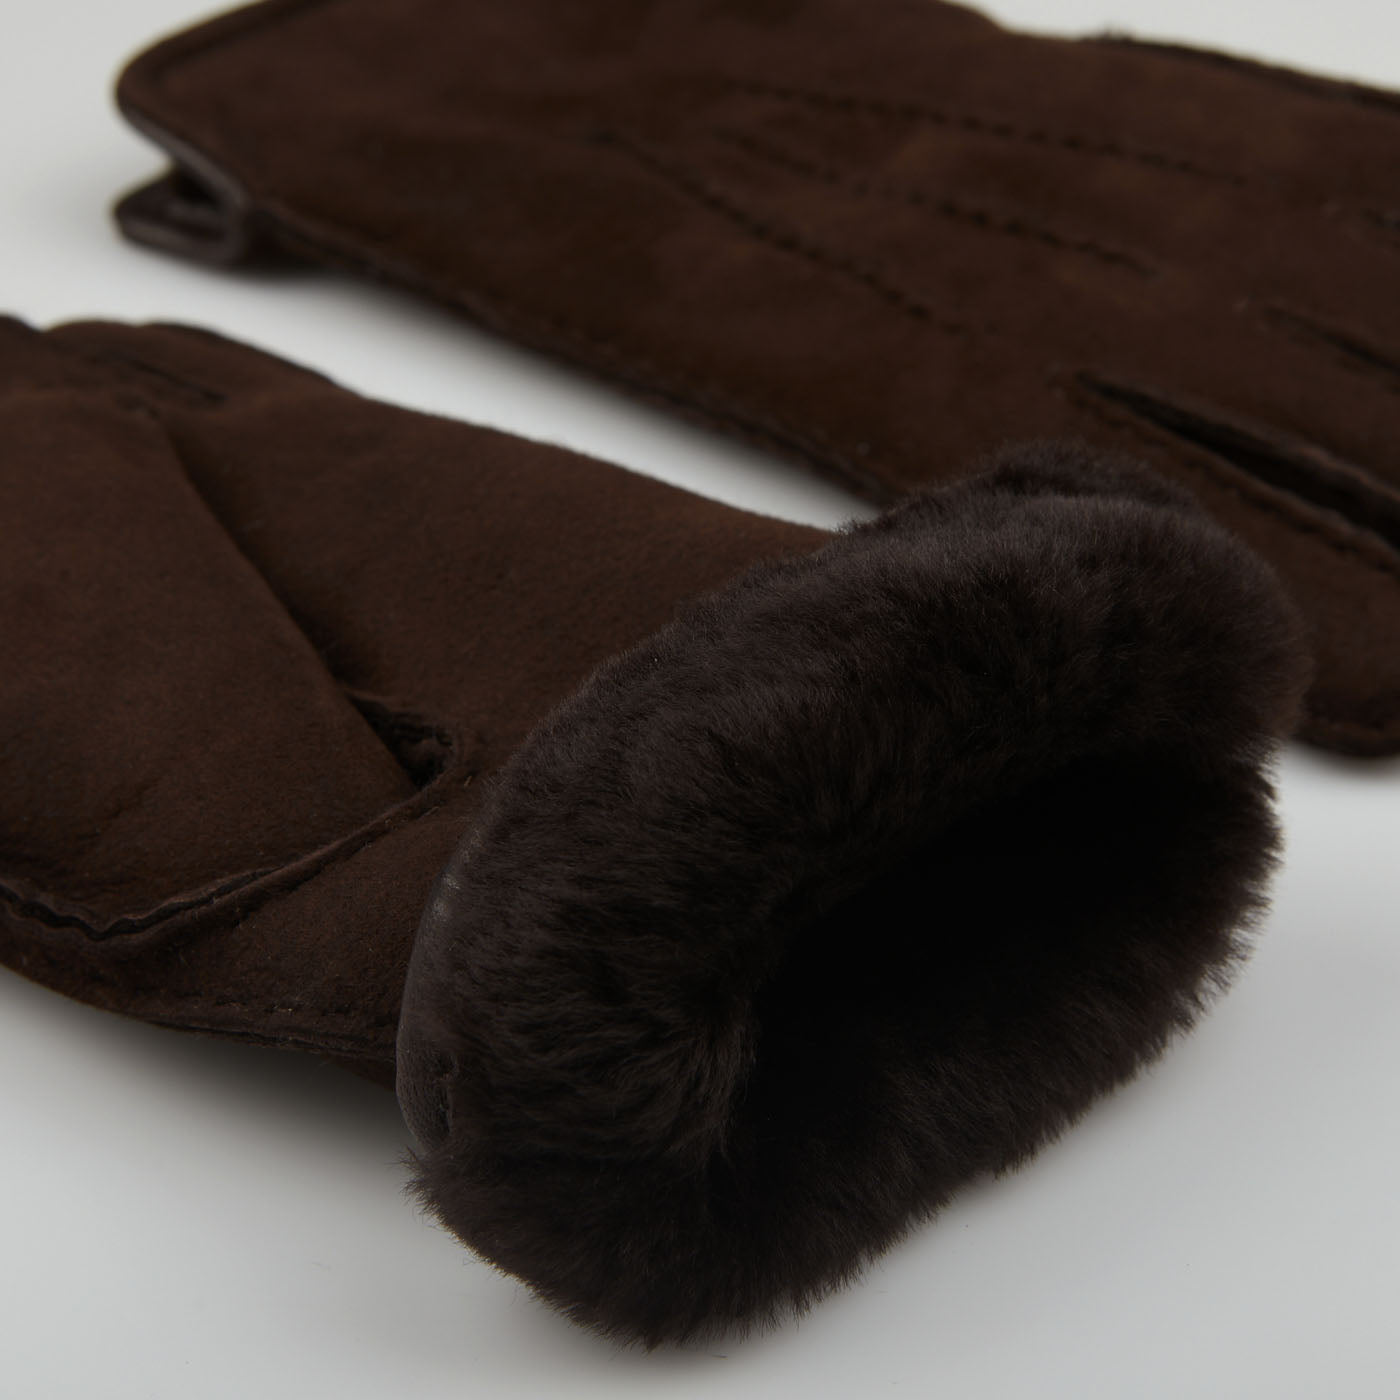 Wool Dark – Christ Brown Lined | Suede Gloves Leather Werner Baltzar